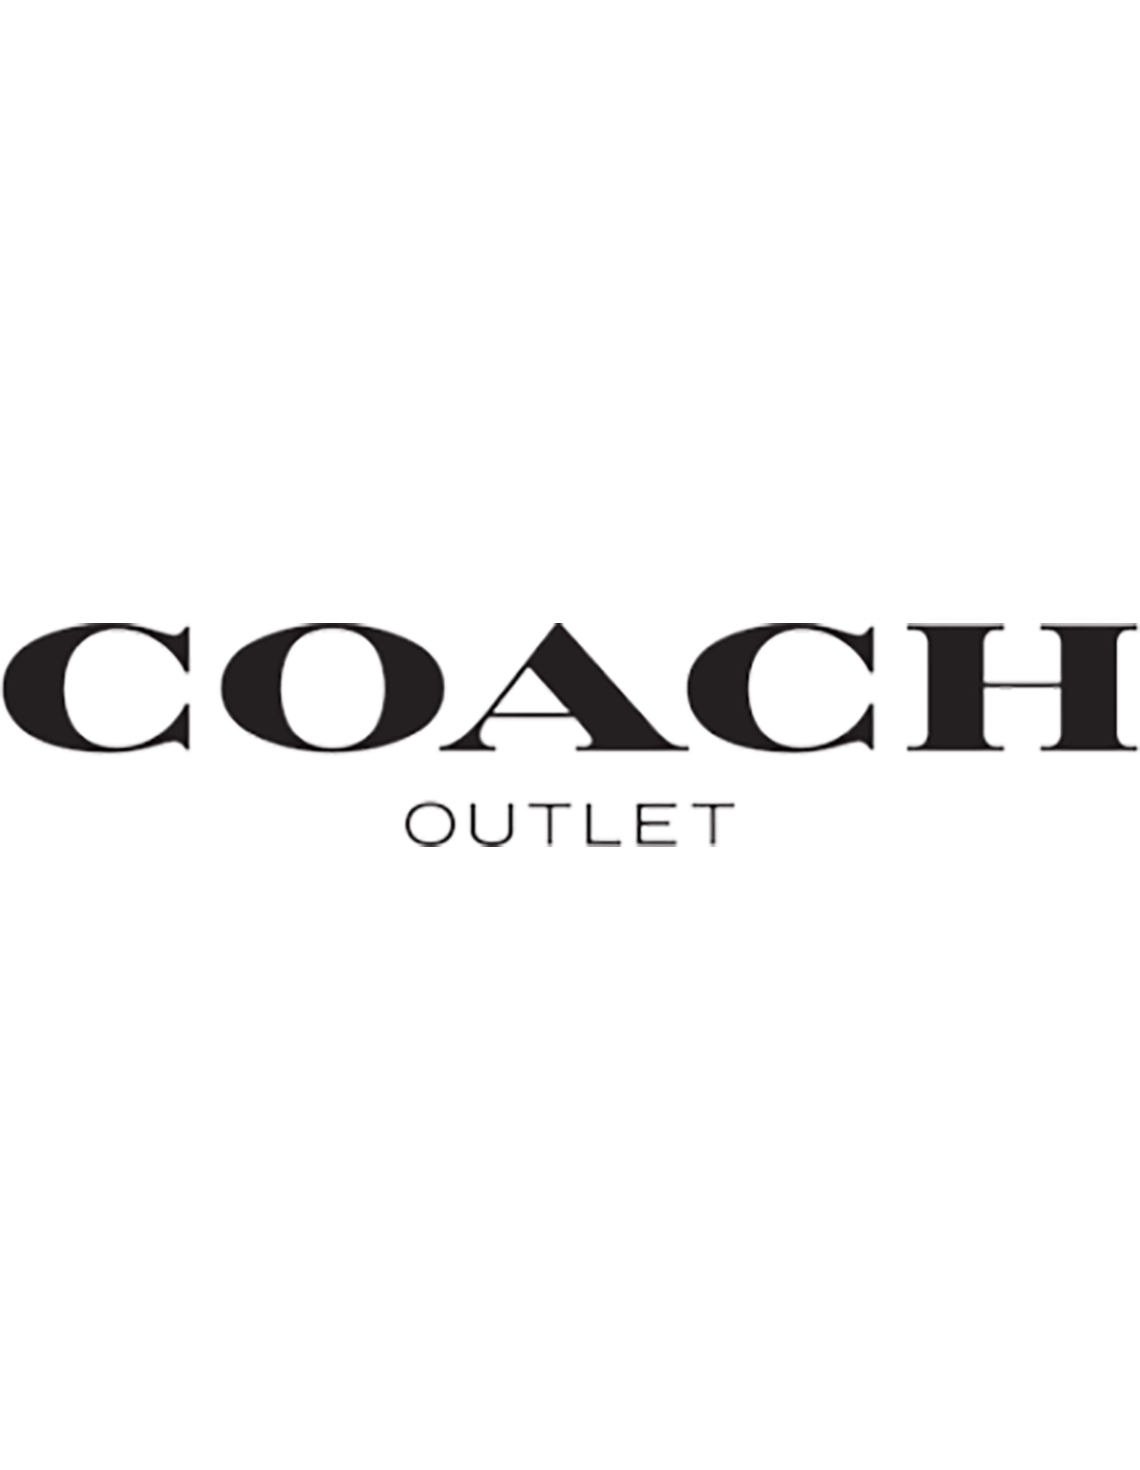 COACH Outlet logo